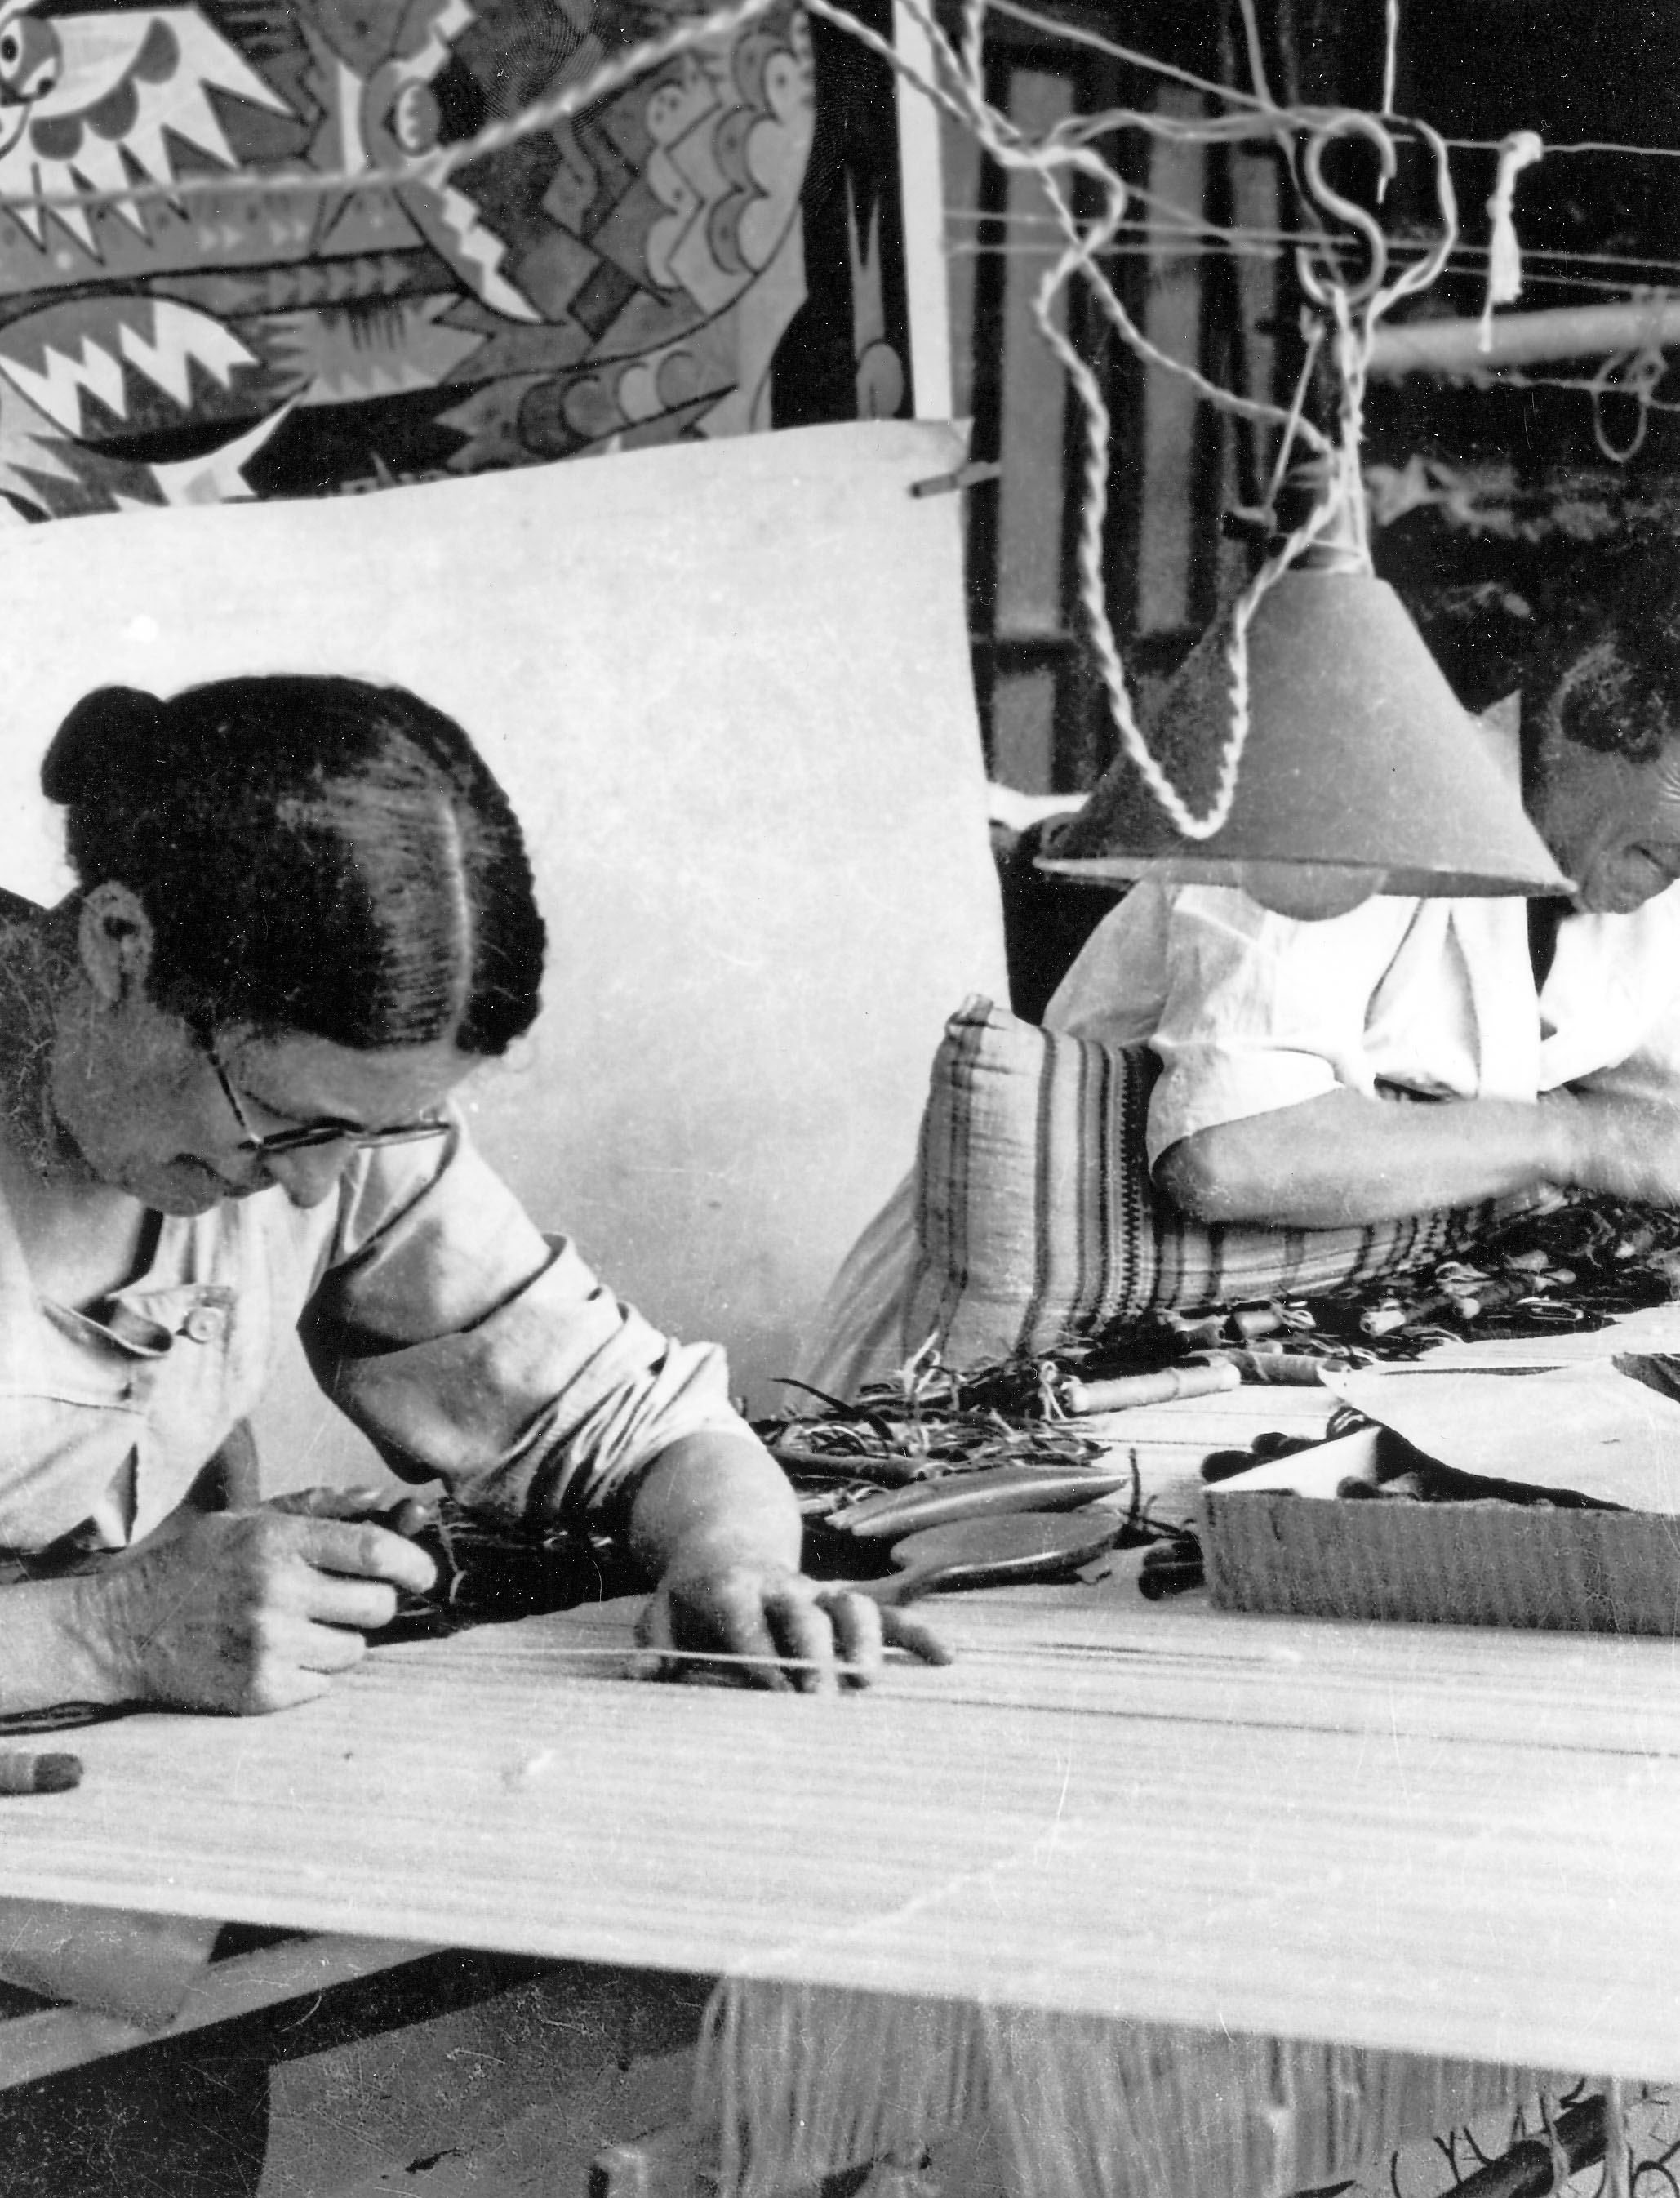 Vue d'une ouvrière au travail, dans l'atelier de tissage de la manufacture Goubely (v. 1970).